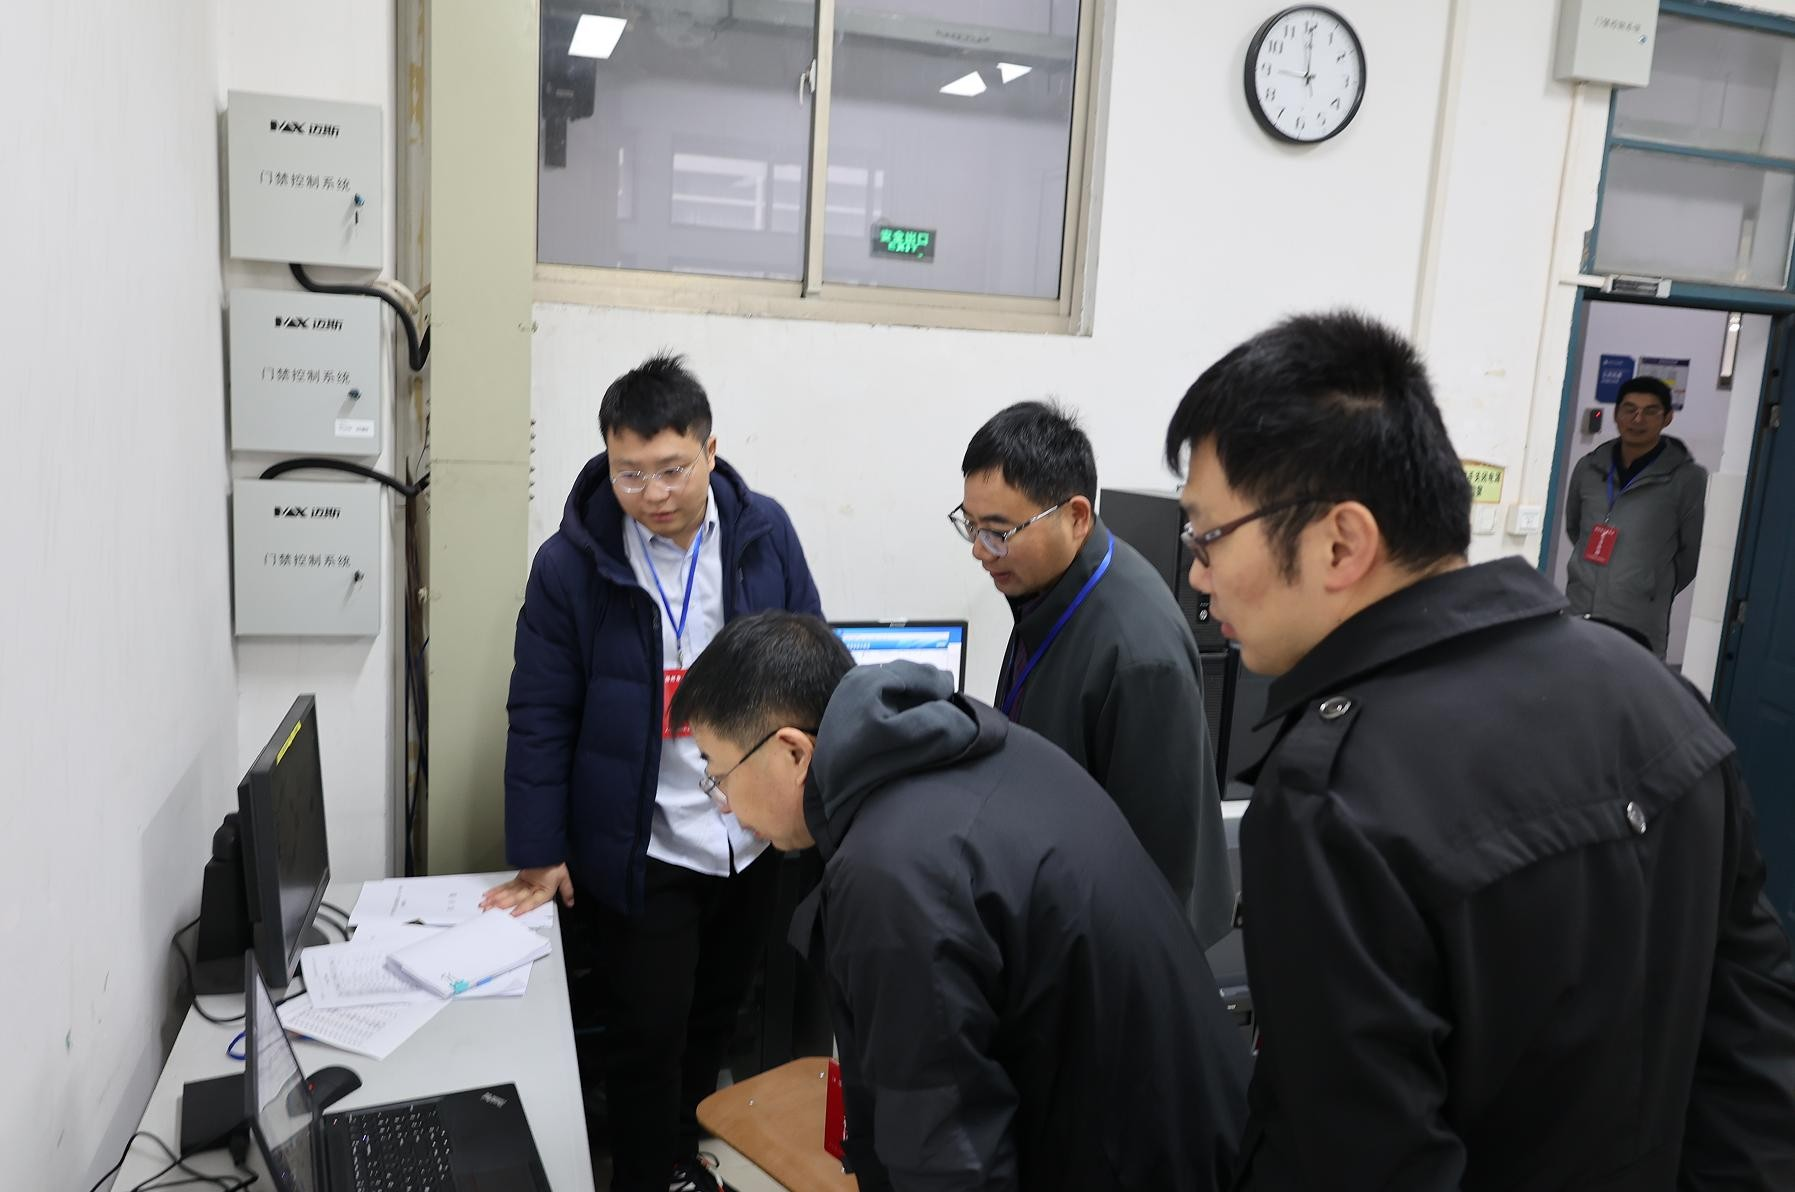 扬州2023年初中级经济师资格考试顺利举行 